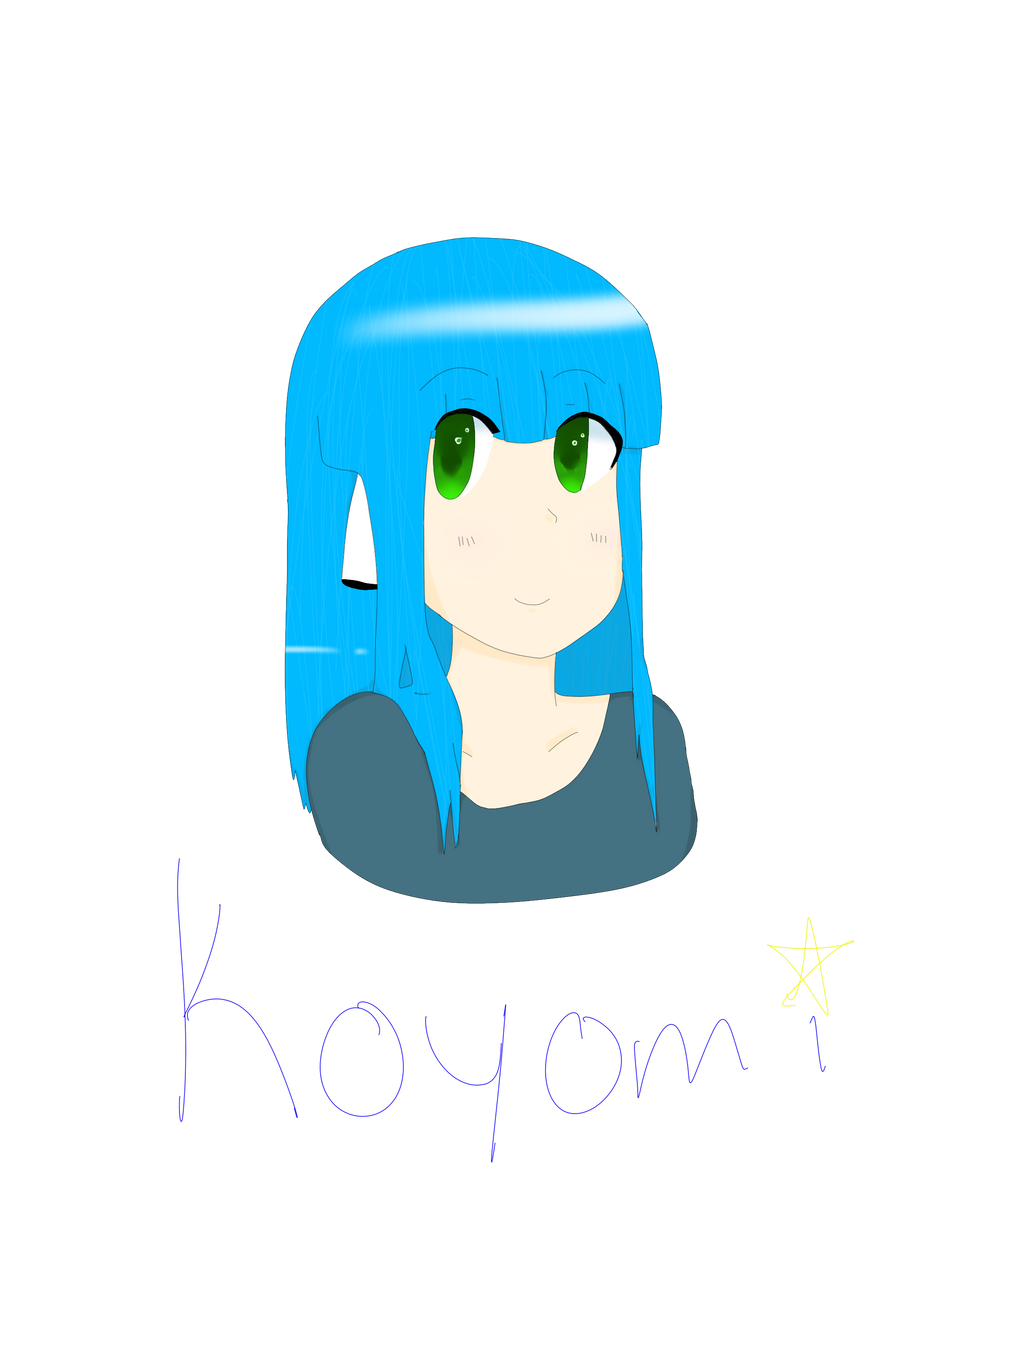 Hayy Koyomi~